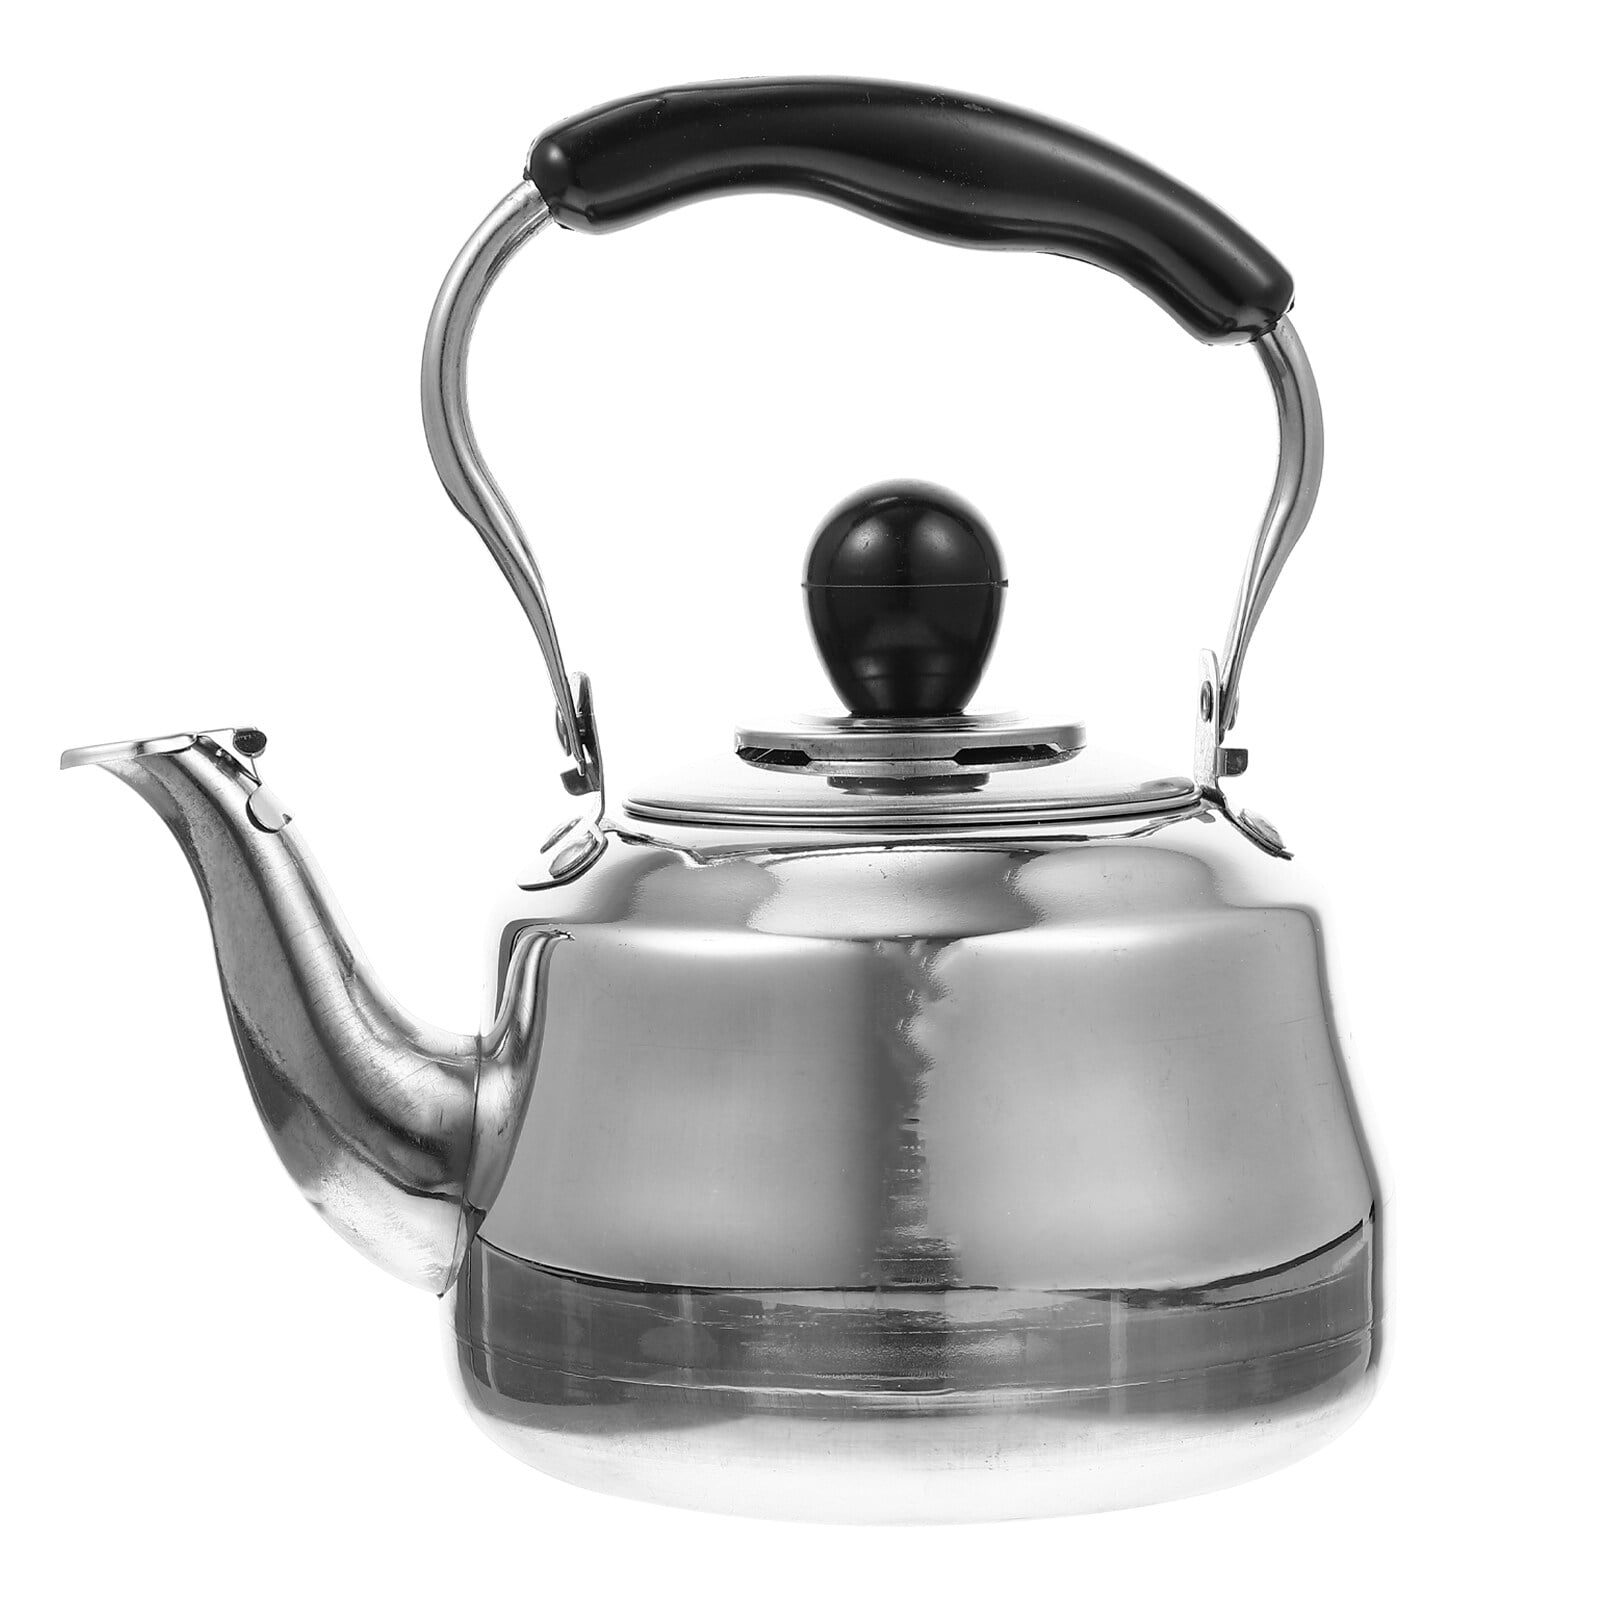 Tea Kettle, Stovetop Whistling Teakettle, Stainless Steel Material Tea Pot, Ergonomic Handle Teapot, Fast Eater Boiling